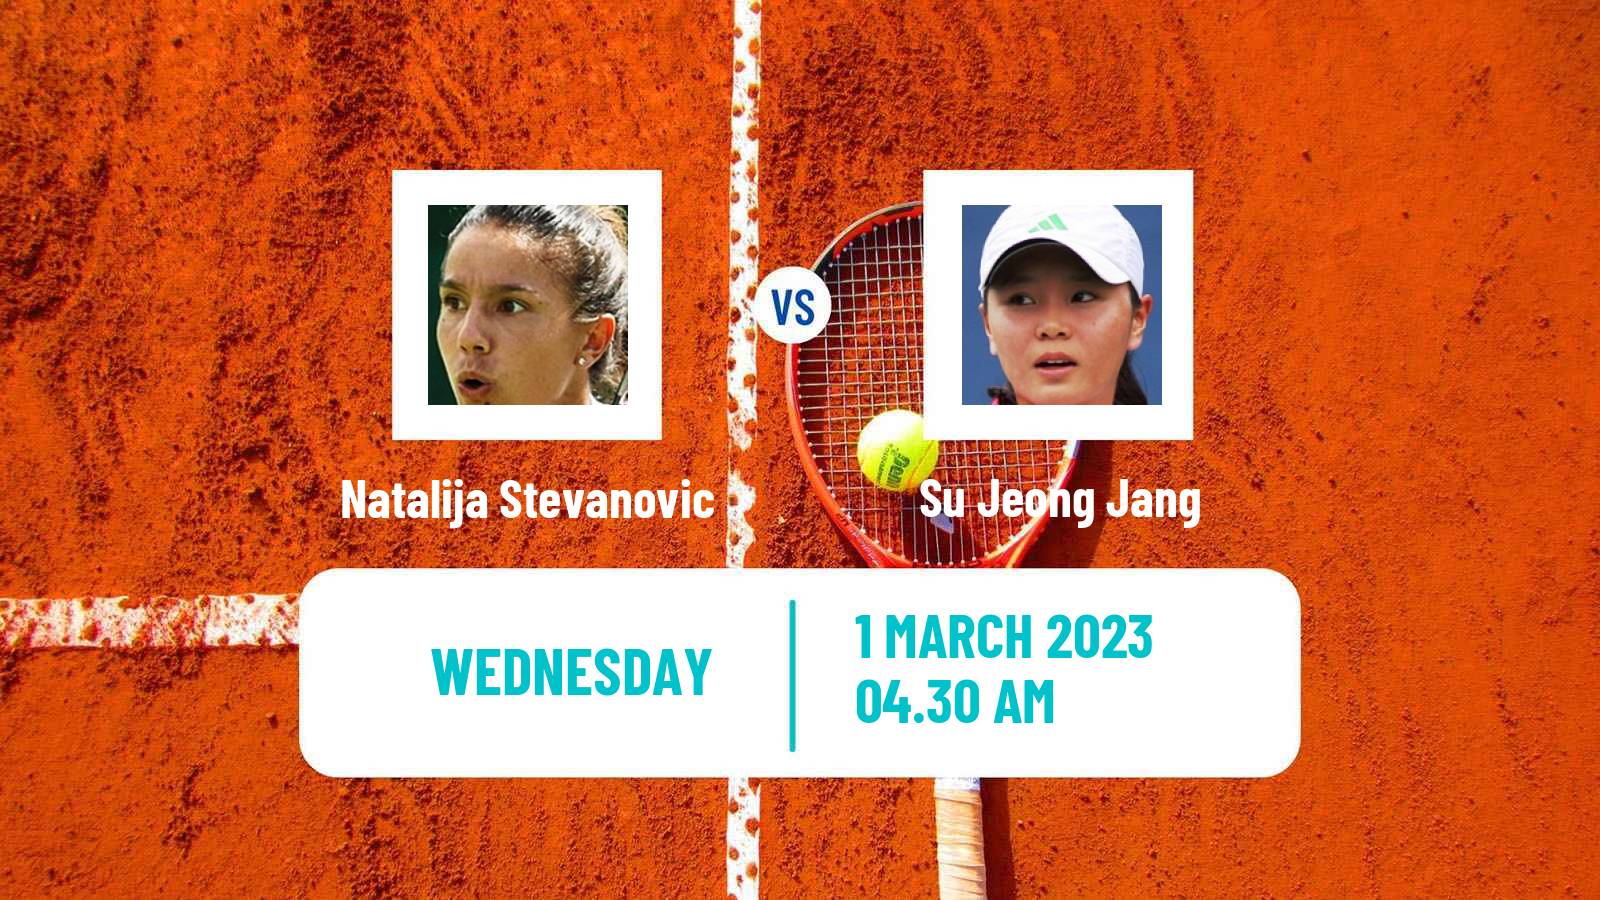 Tennis ITF Tournaments Natalija Stevanovic - Su Jeong Jang